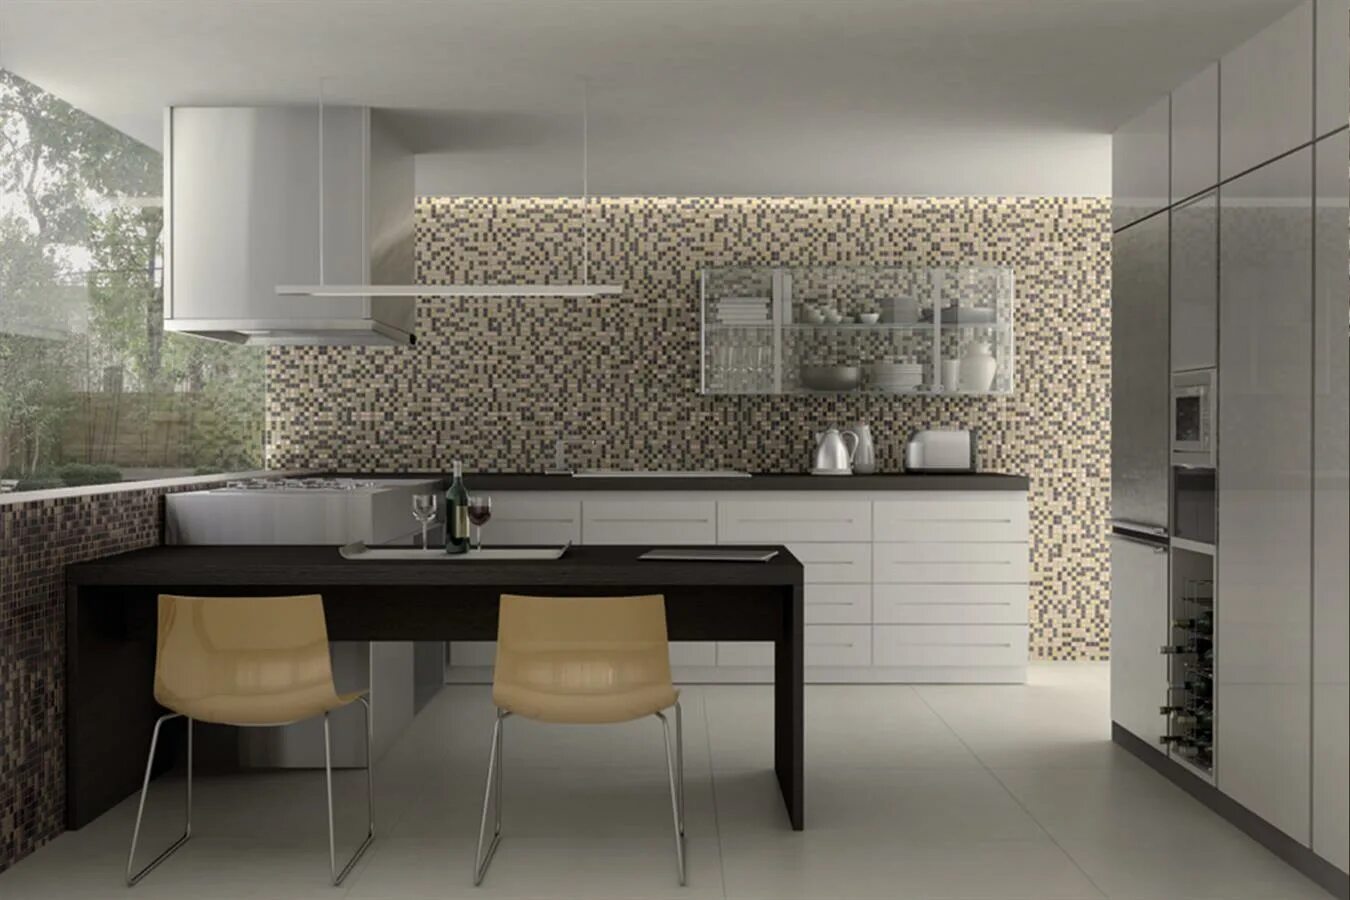 Плитка в интерьере кухни. Мозаика в интерьере кухни. Плитка мозаика для кухни. Плитка мозаика в интерьере кухни. Мозаика для кухни на стену.